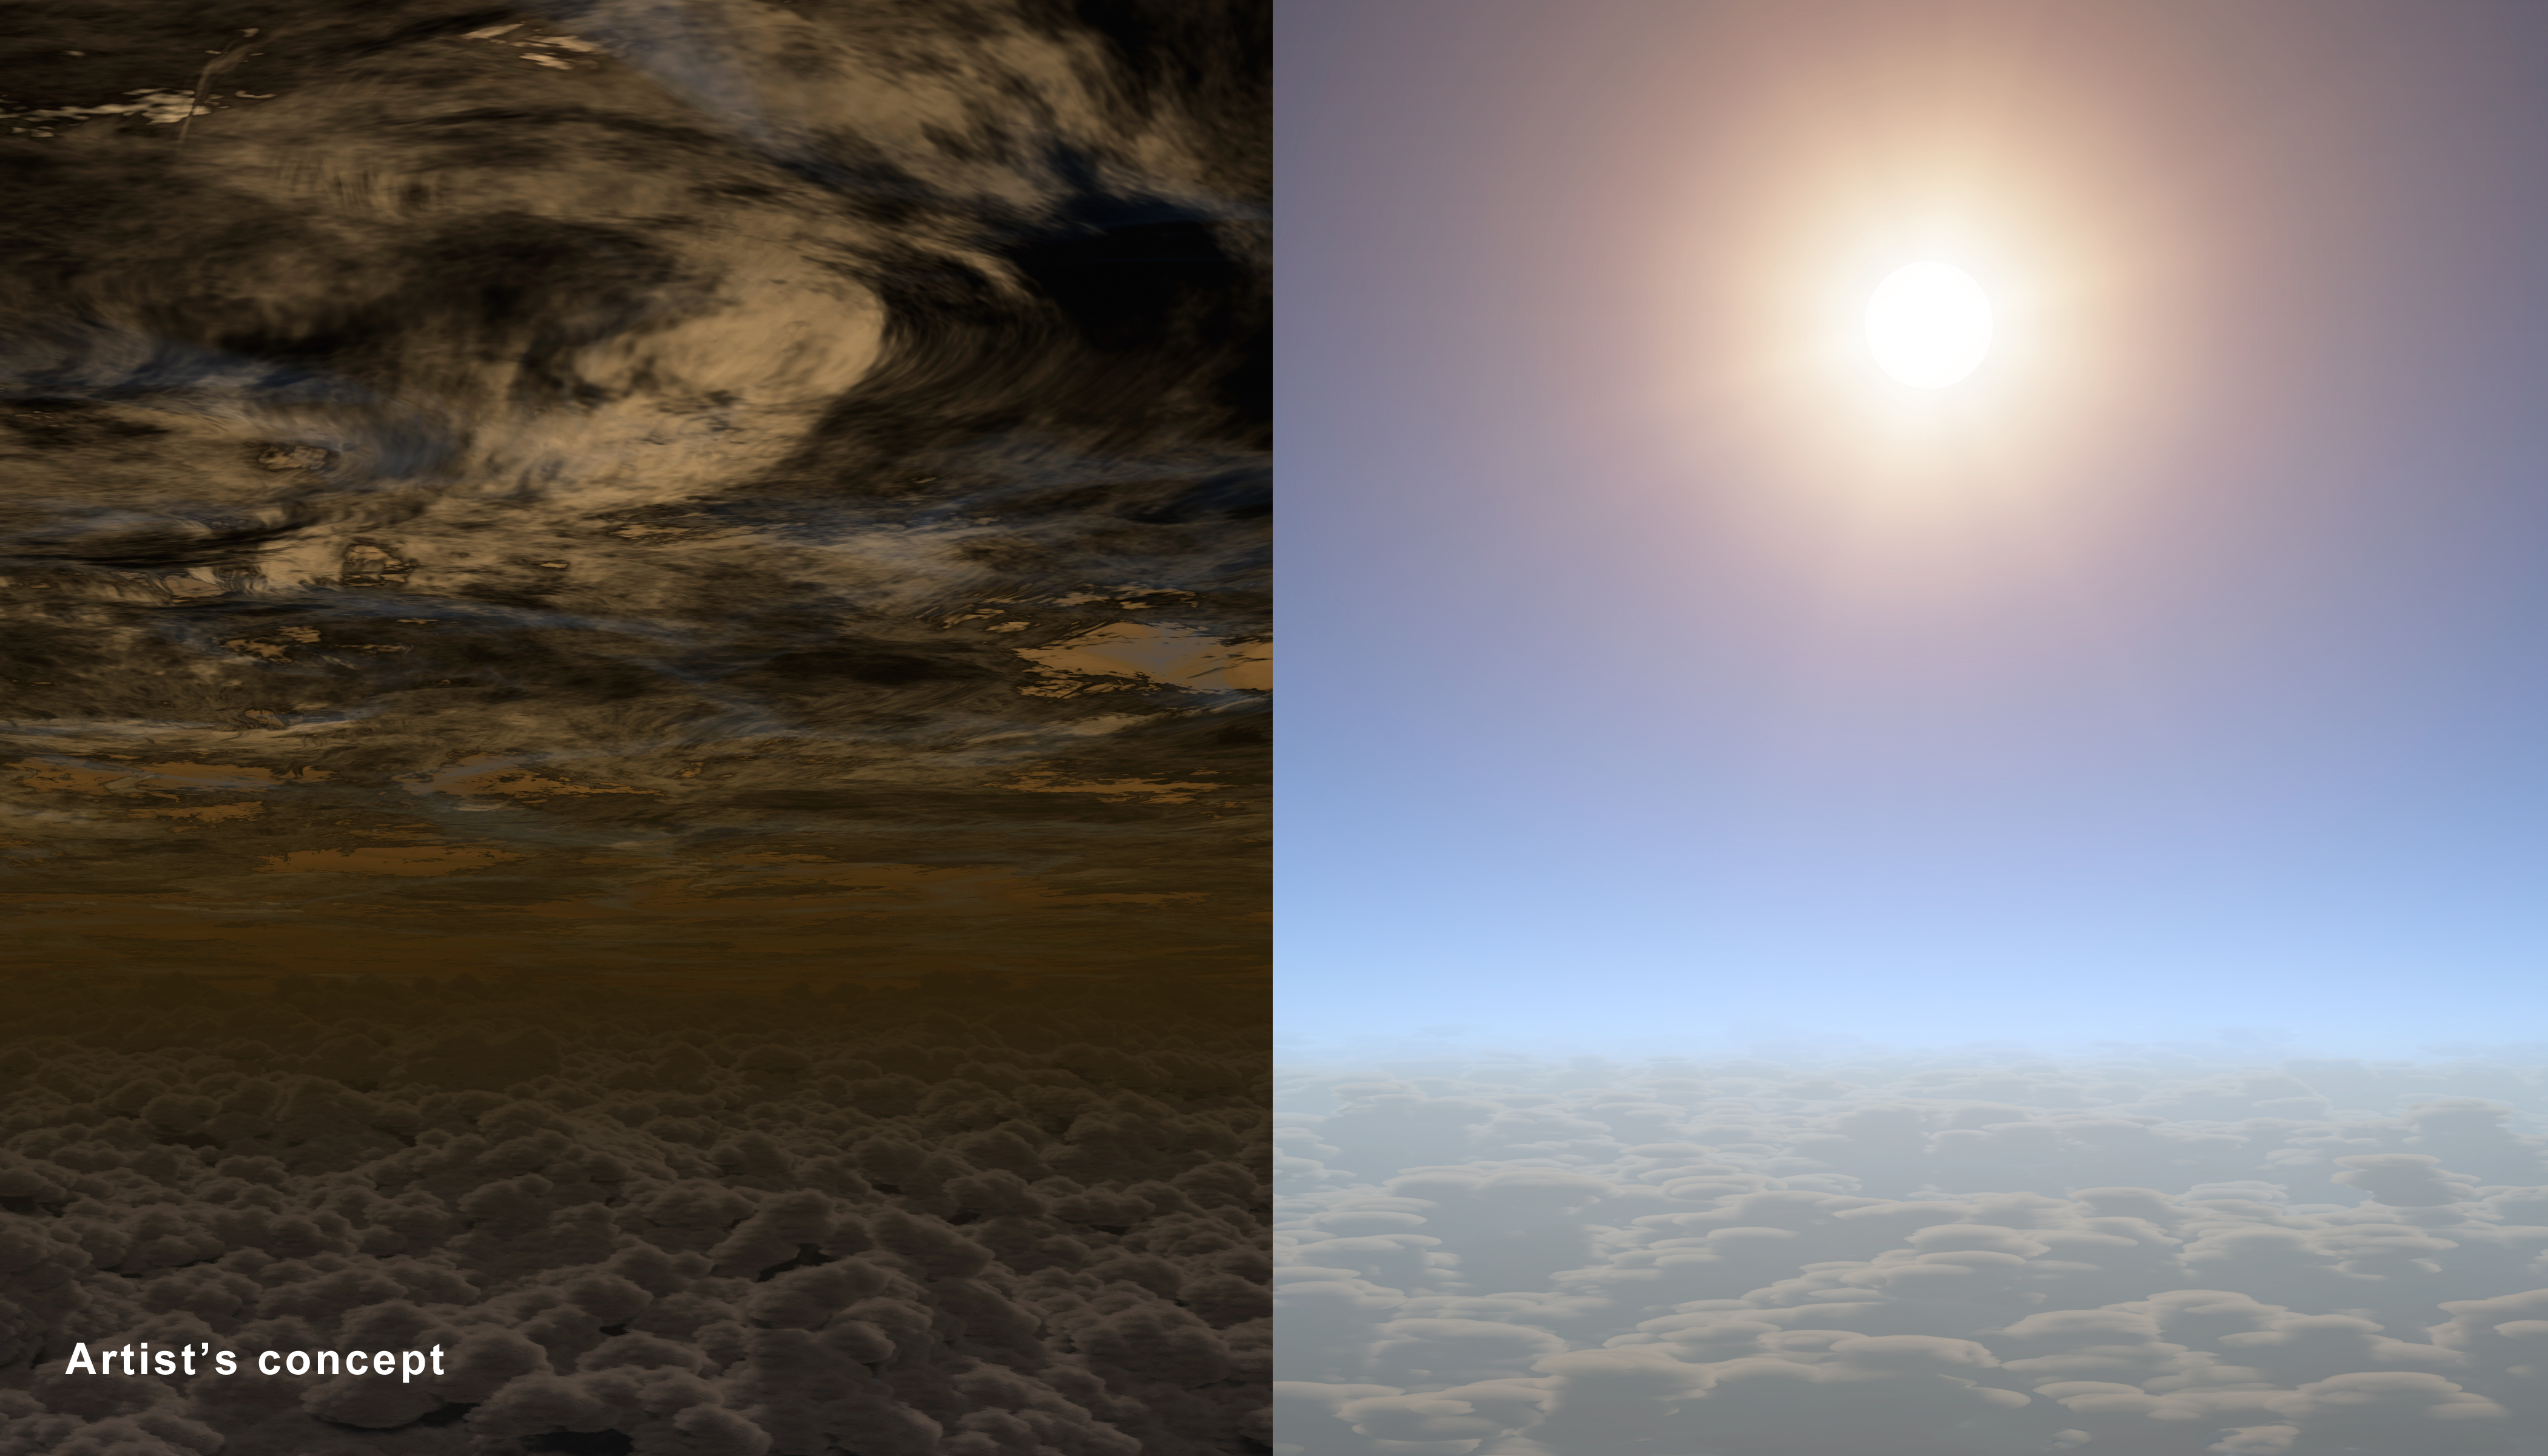 Hasta ahora todos los exoplanetas del tamaño de la Tierra tenían cielos como los de la izquierda; HAT-P-11b los tiene claros, como los de la derecha. Fuente: NASA/JPL-Caltech.